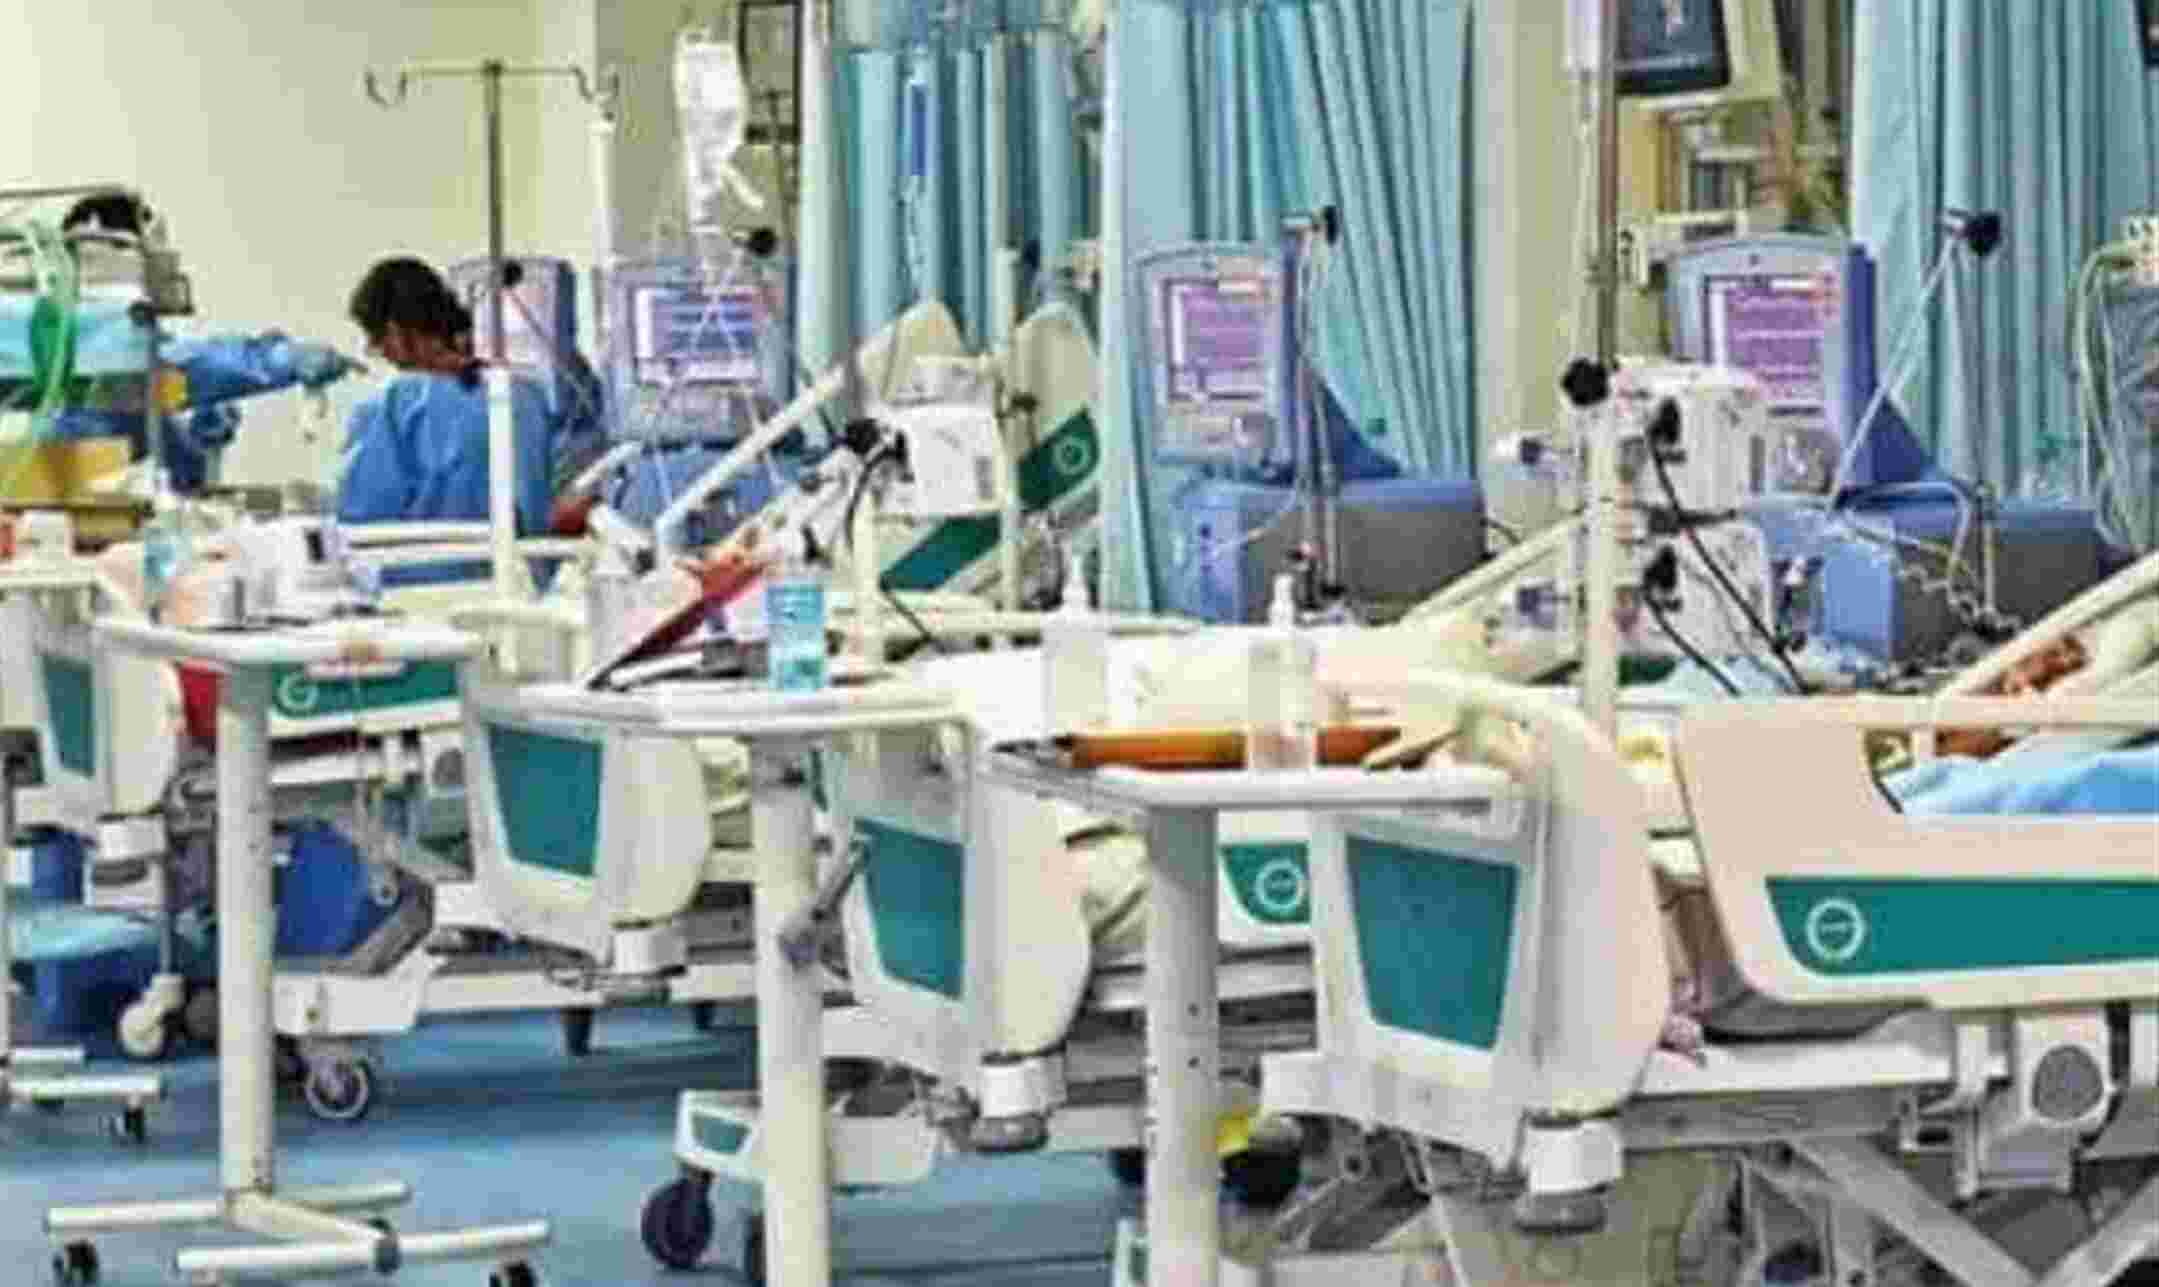 Farrukhabad News: लोहिया अस्पताल के शौचालय में मरीज की मौत, तीन घंटे वहीं पड़ा रहा शव